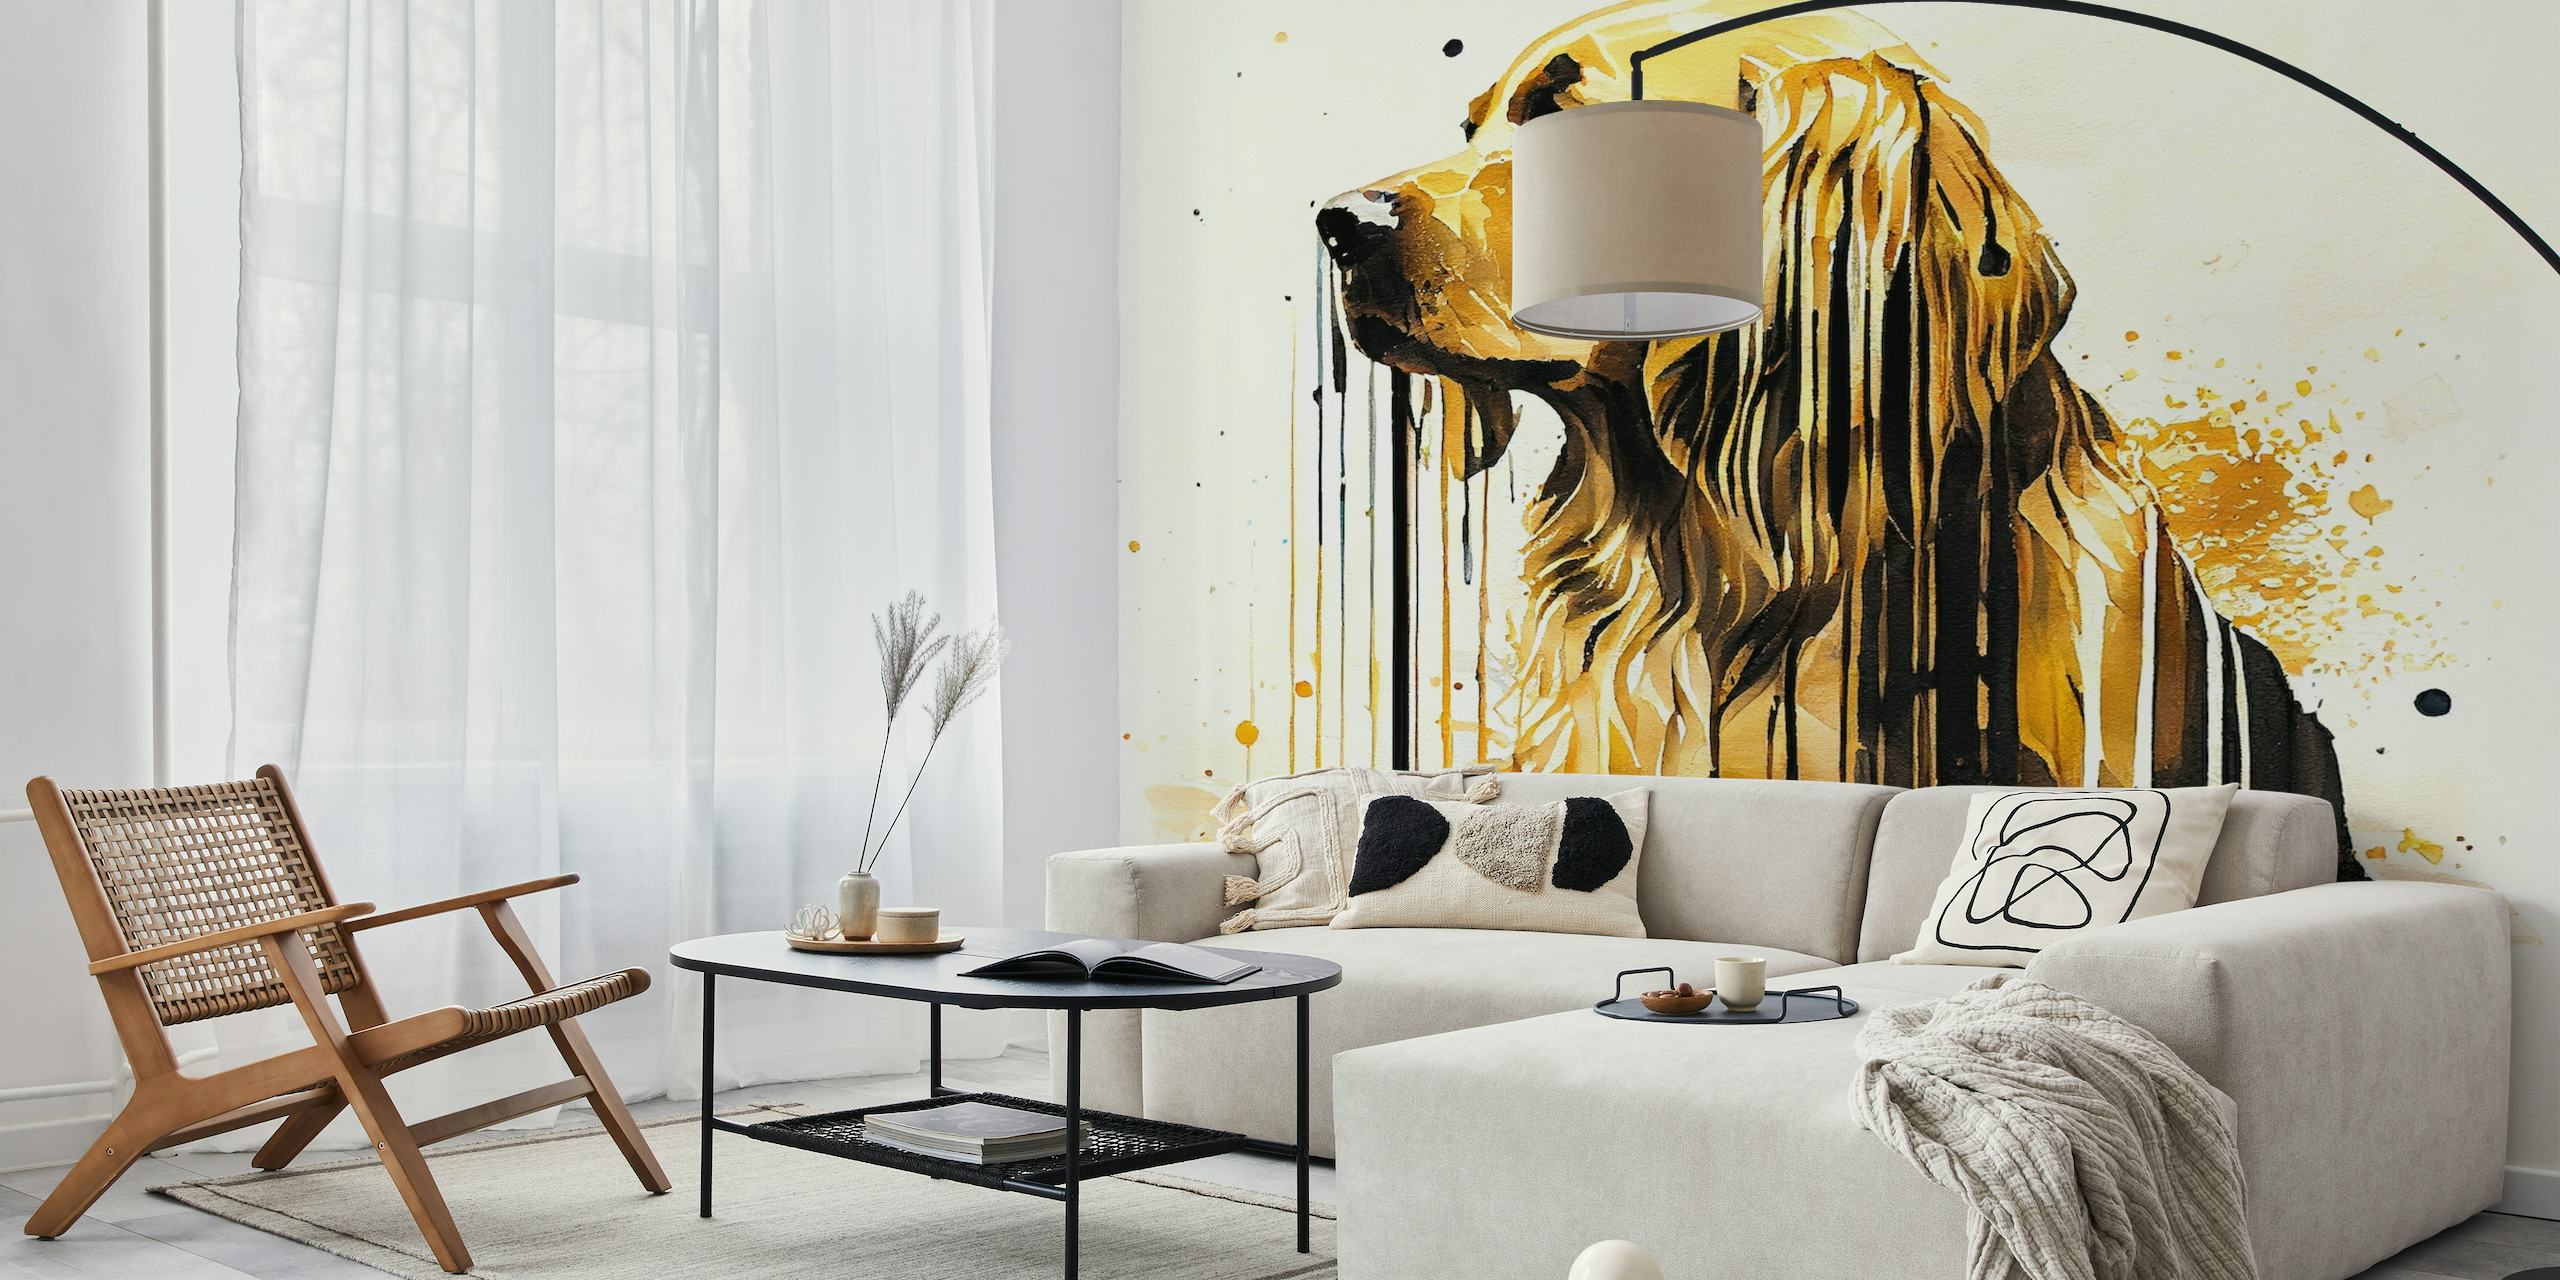 Fotomural vinílico de parede de cachorro Golden Retriever estilo aquarela com traços vibrantes e tons quentes